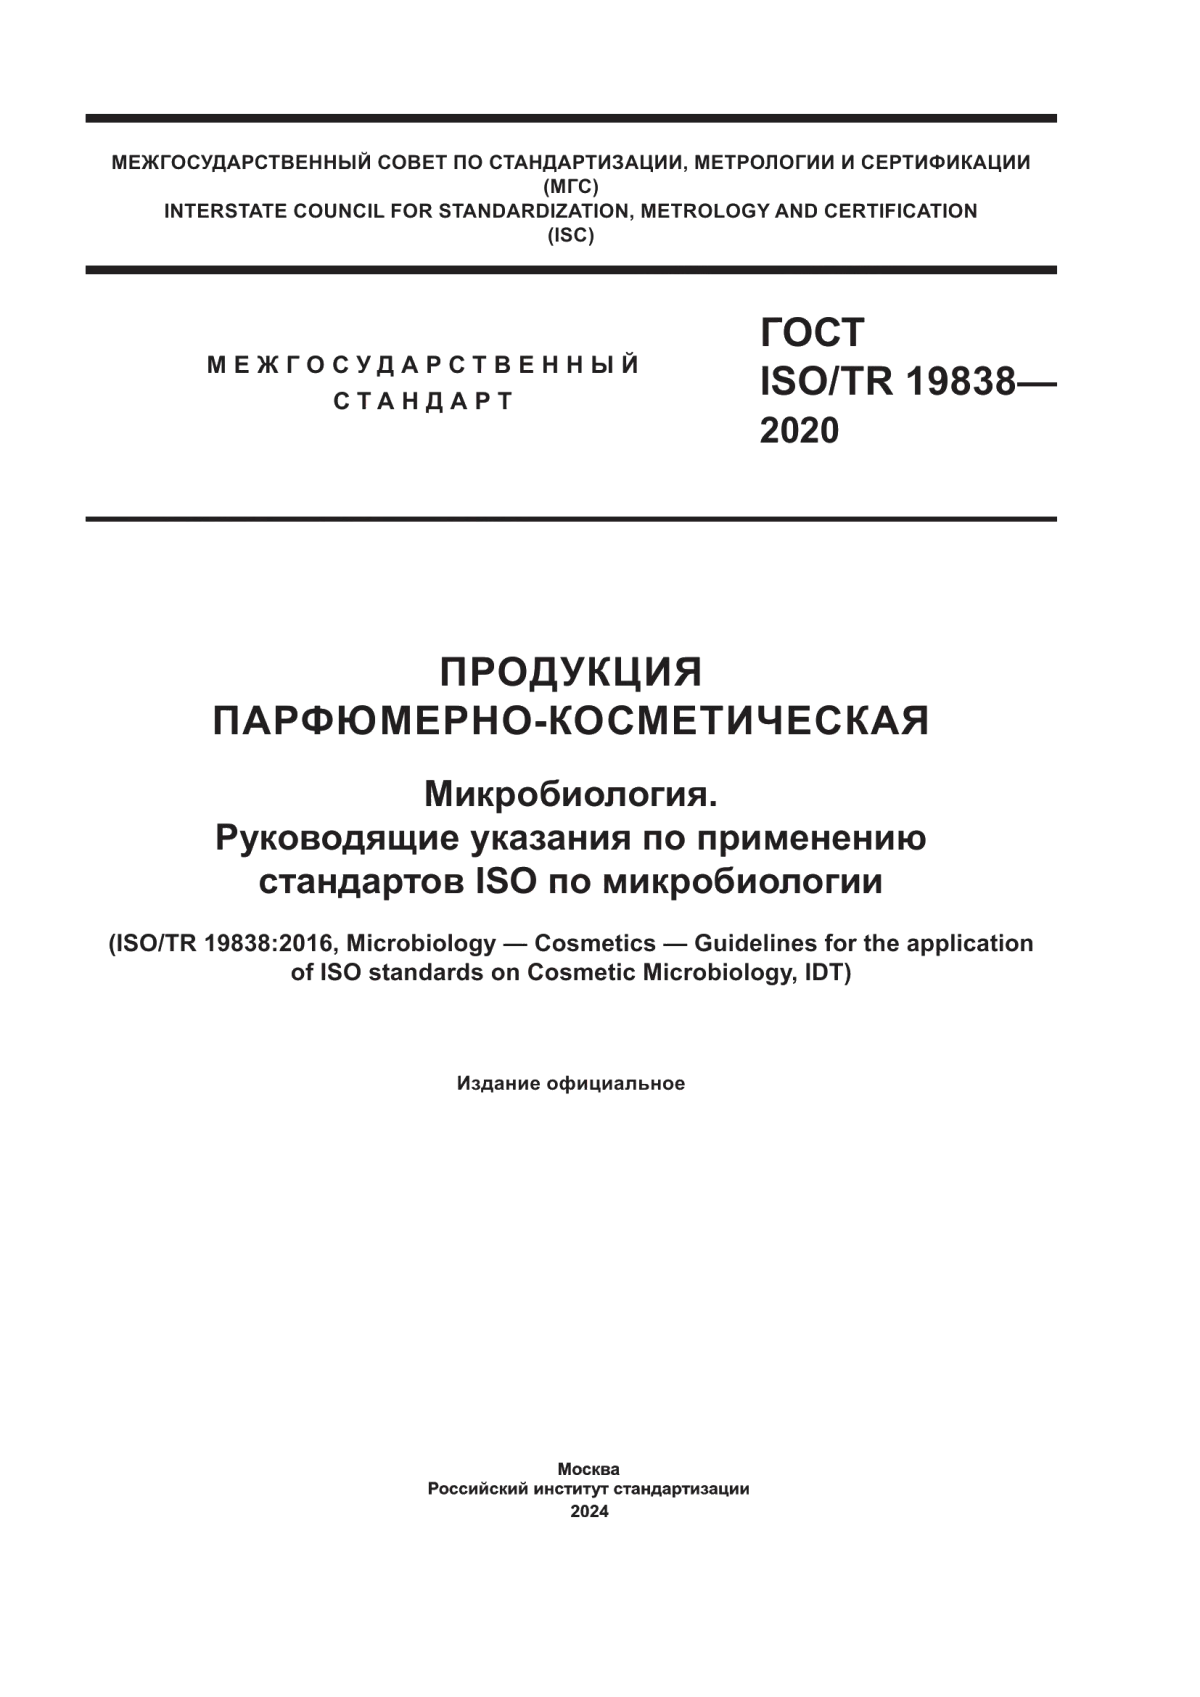 ГОСТ ISO/TR 19838-2020 Продукция парфюмерно-косметическая. Микробиология. Руководящие указания по применению стандартов ISO по микробиологии